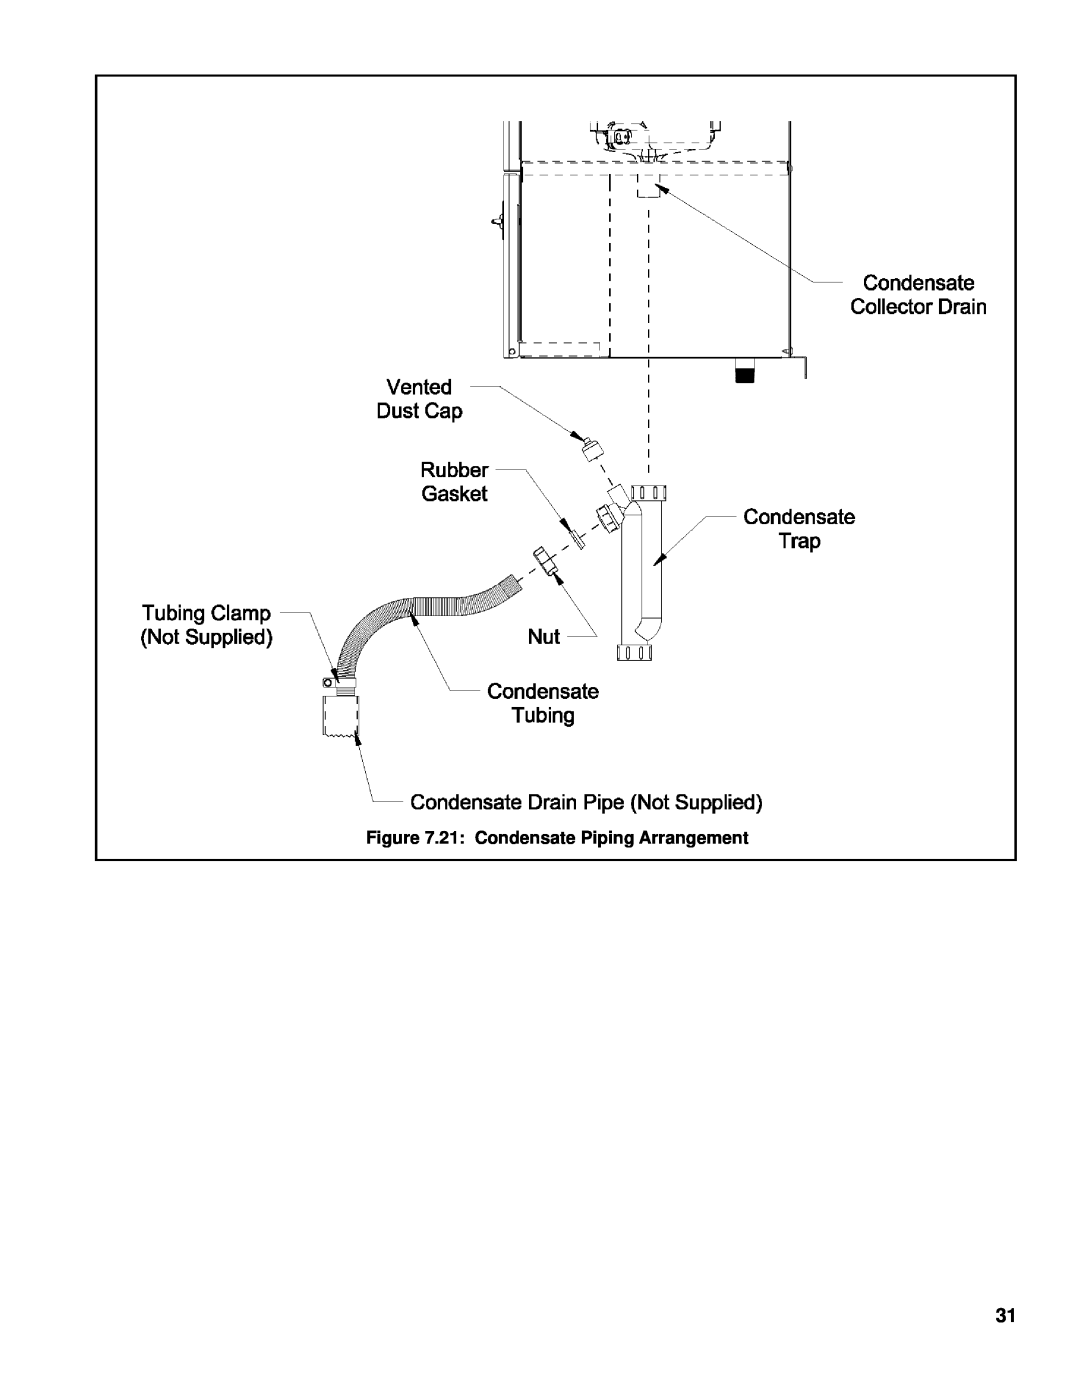 Burnham 101008-01R1-2/07 manual 21 Condensate Piping Arrangement 